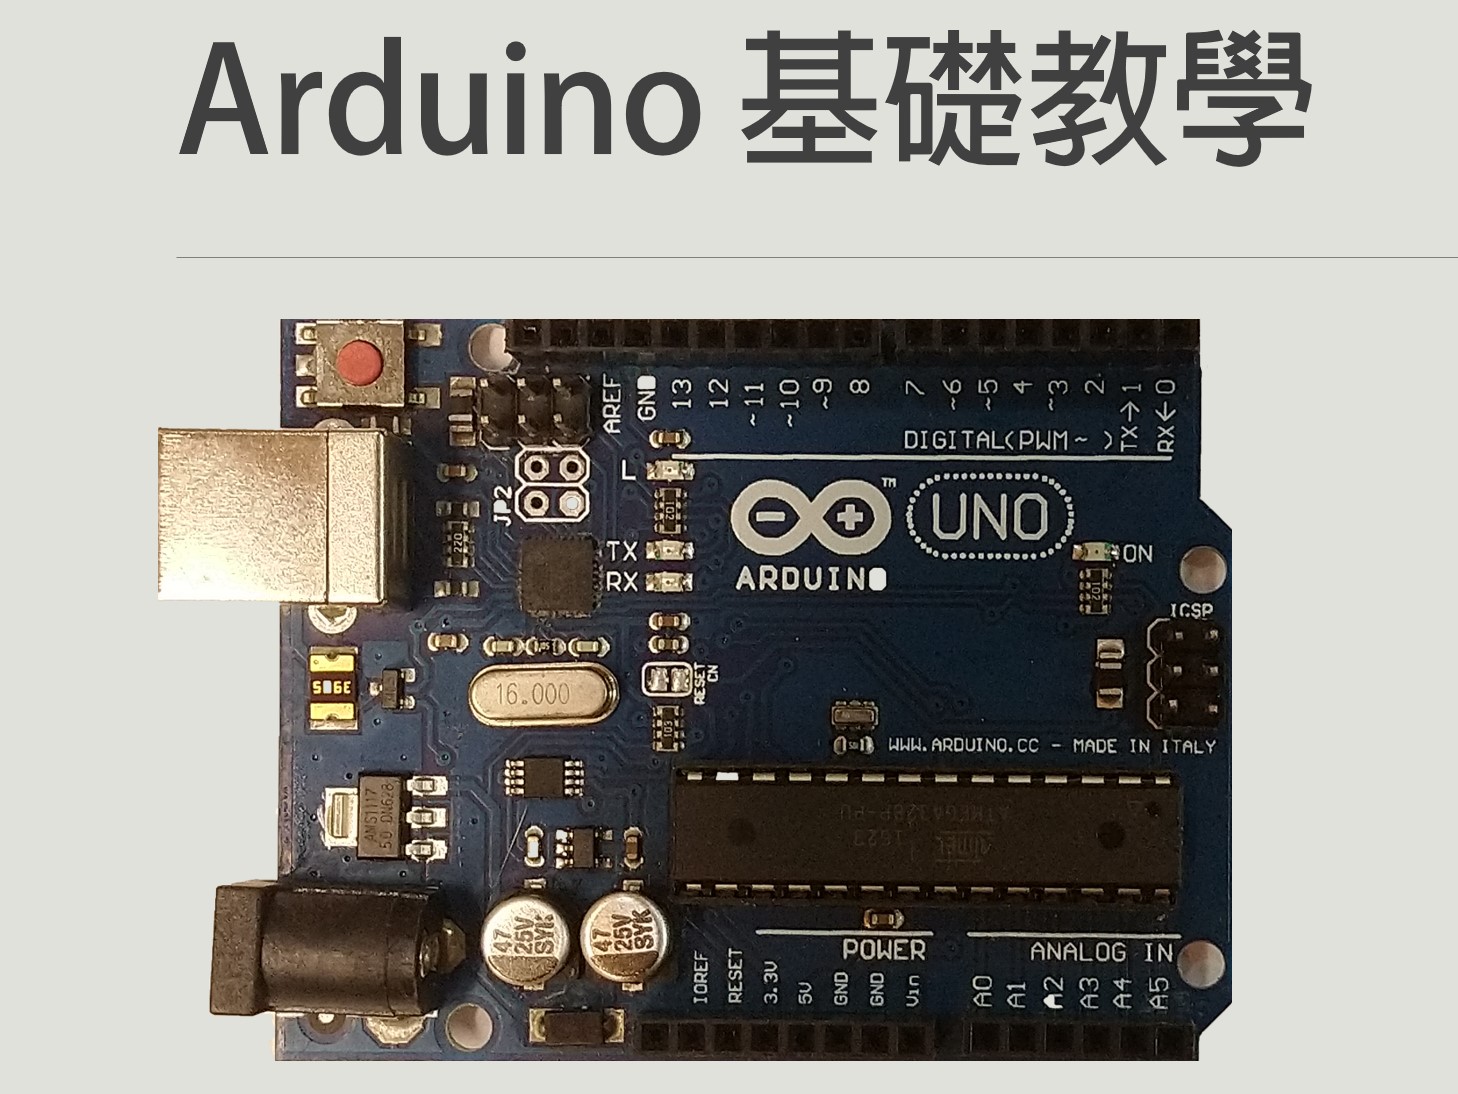 Arduino 基礎教學文章彙整